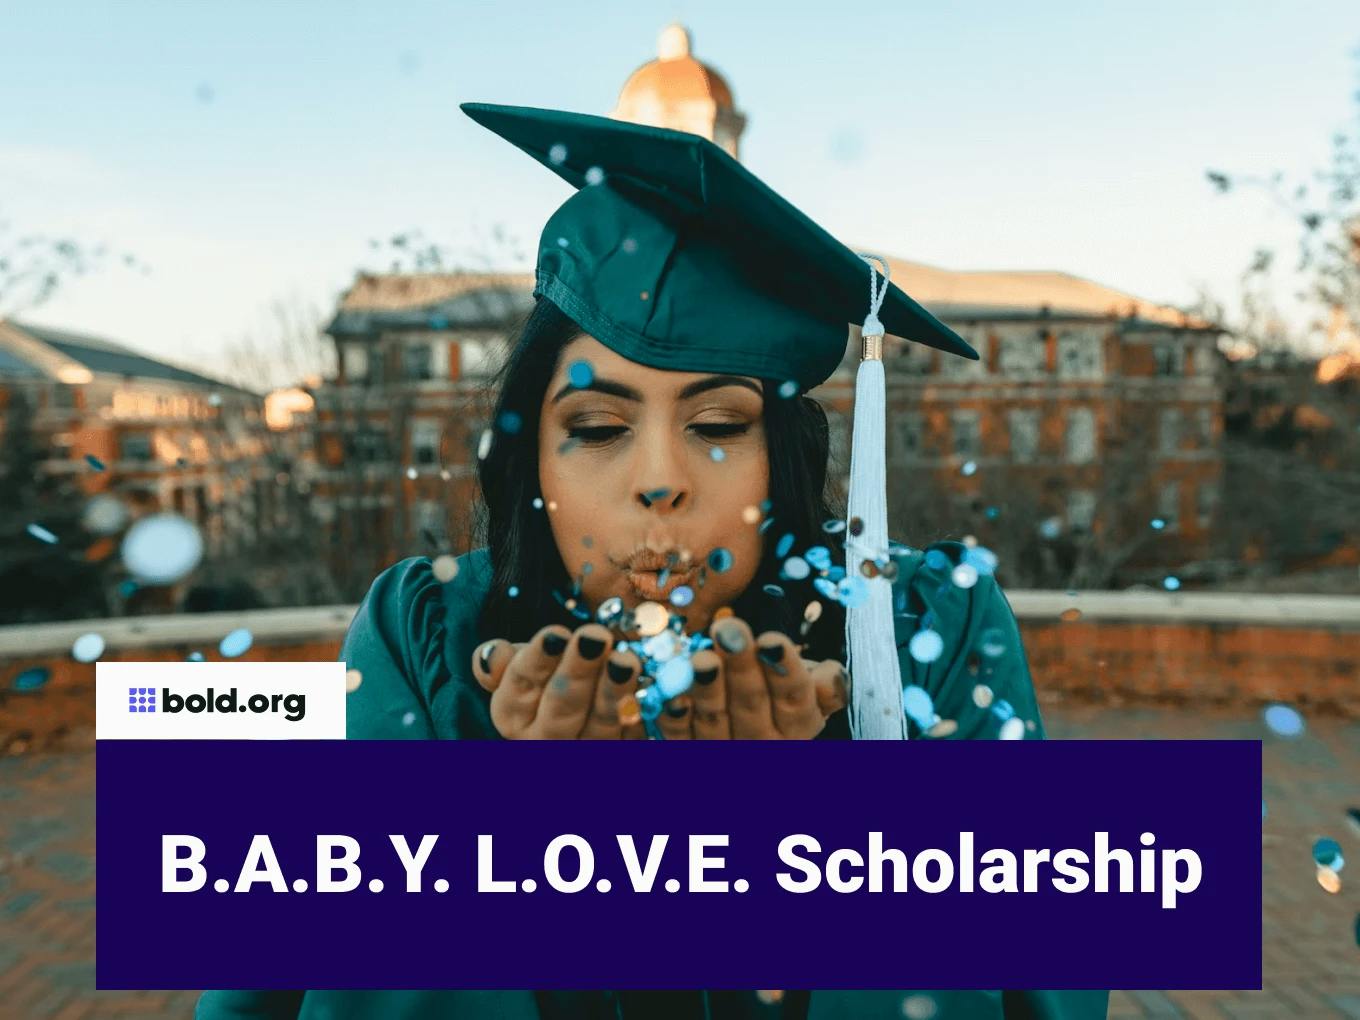 B.A.B.Y. L.O.V.E. Scholarship